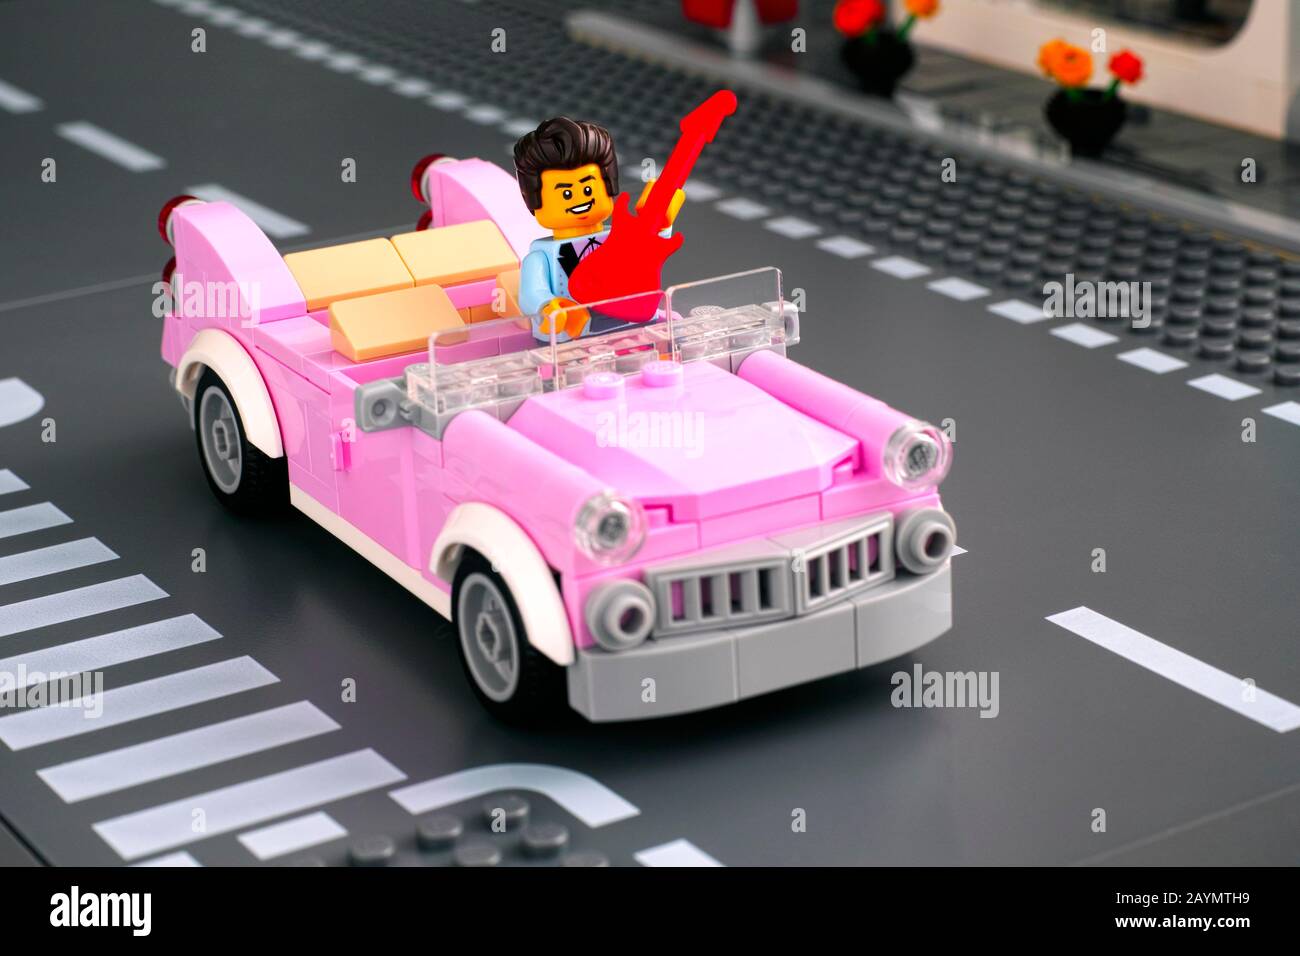 Tambov, Federazione russa - 22 gennaio 2020 minisfigure Lego rock n roll  con chitarra in rosa 1950s-style convertibile in strada. Studio Foto stock  - Alamy